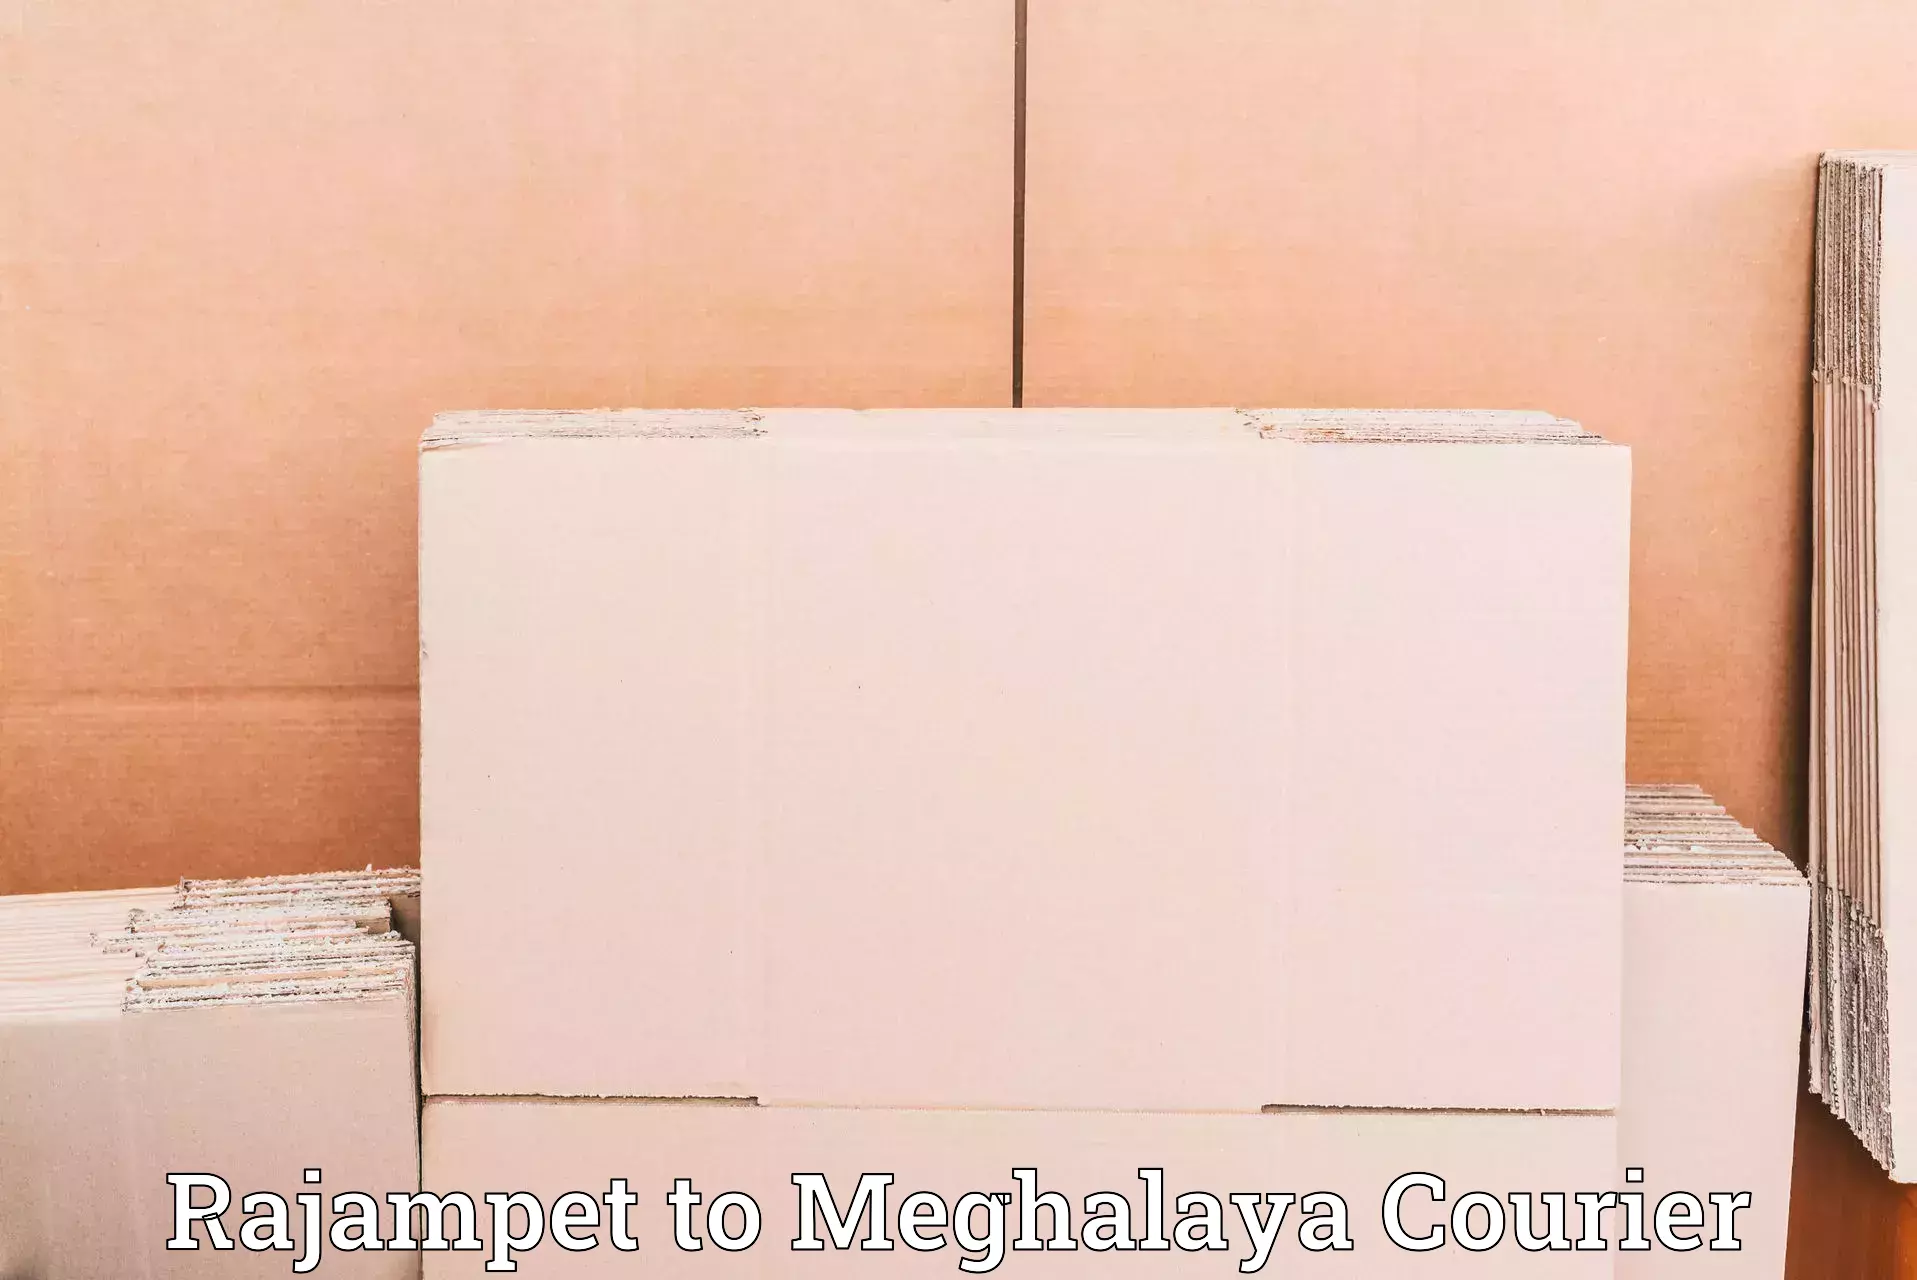 Courier insurance Rajampet to Williamnagar